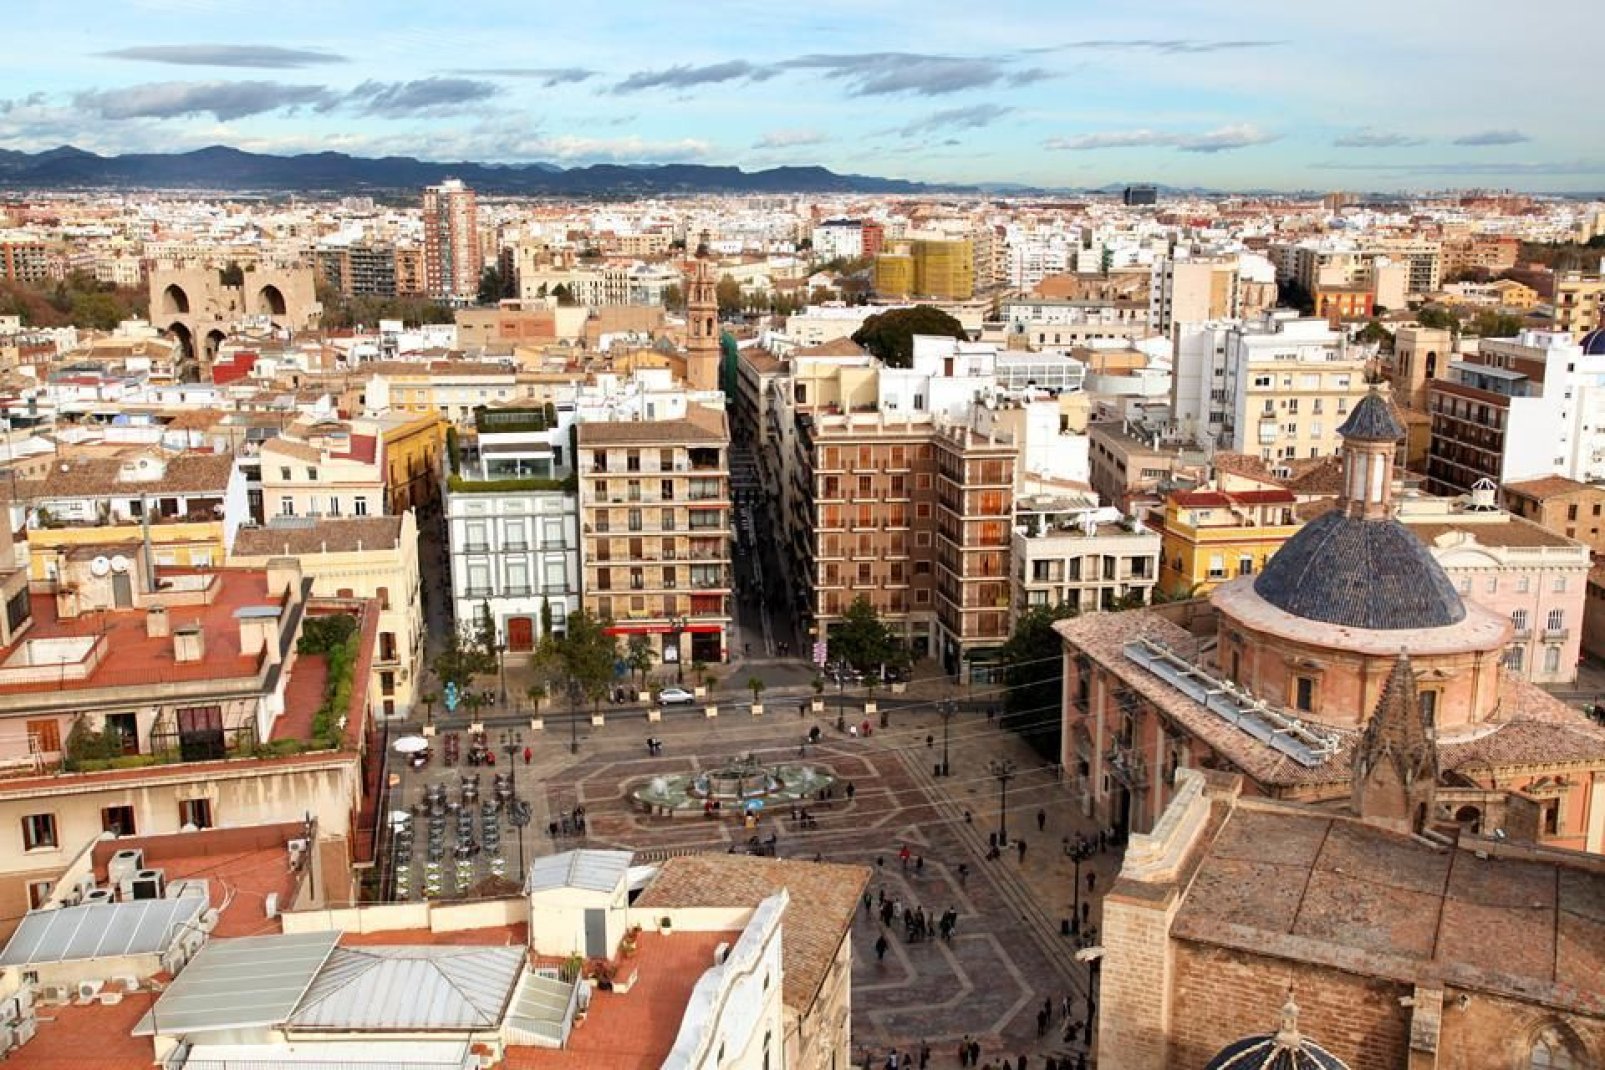 Valencia ist die drittgrößte spanische Stadt nach Madrid und Barcelona. Das mittelalterliche Stadtzentrum ist schön erhalten.